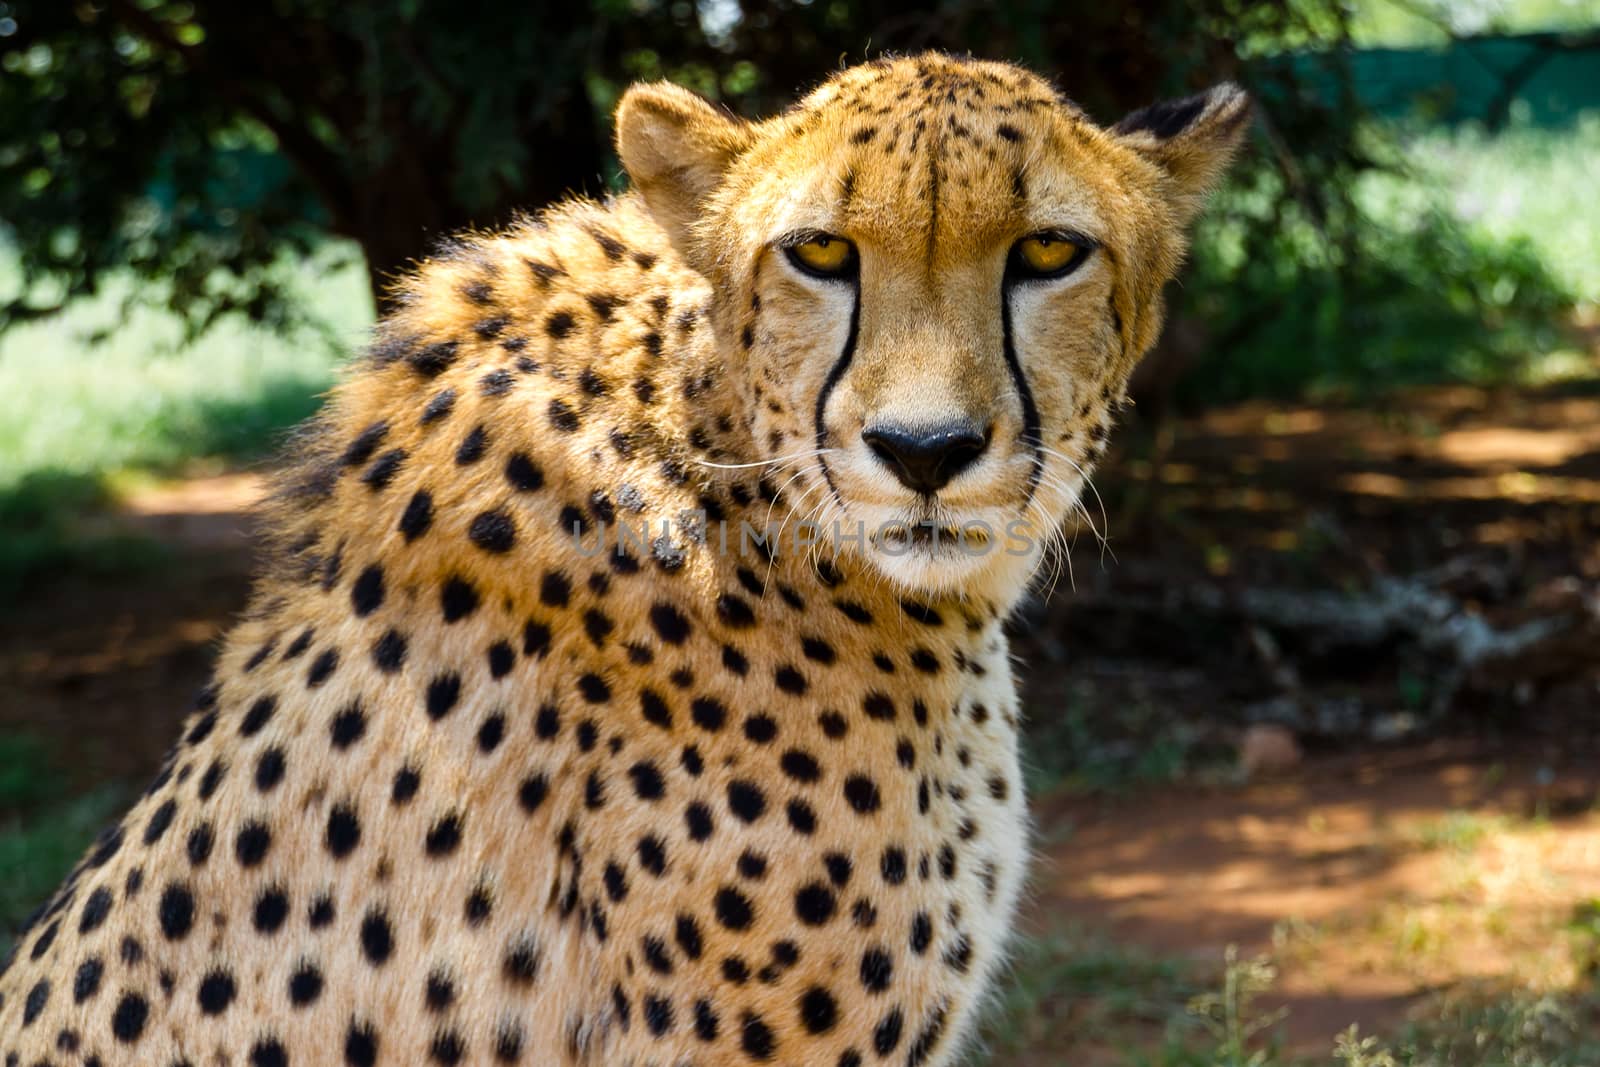 Close up of Cheetah staring into camera by NathanAN